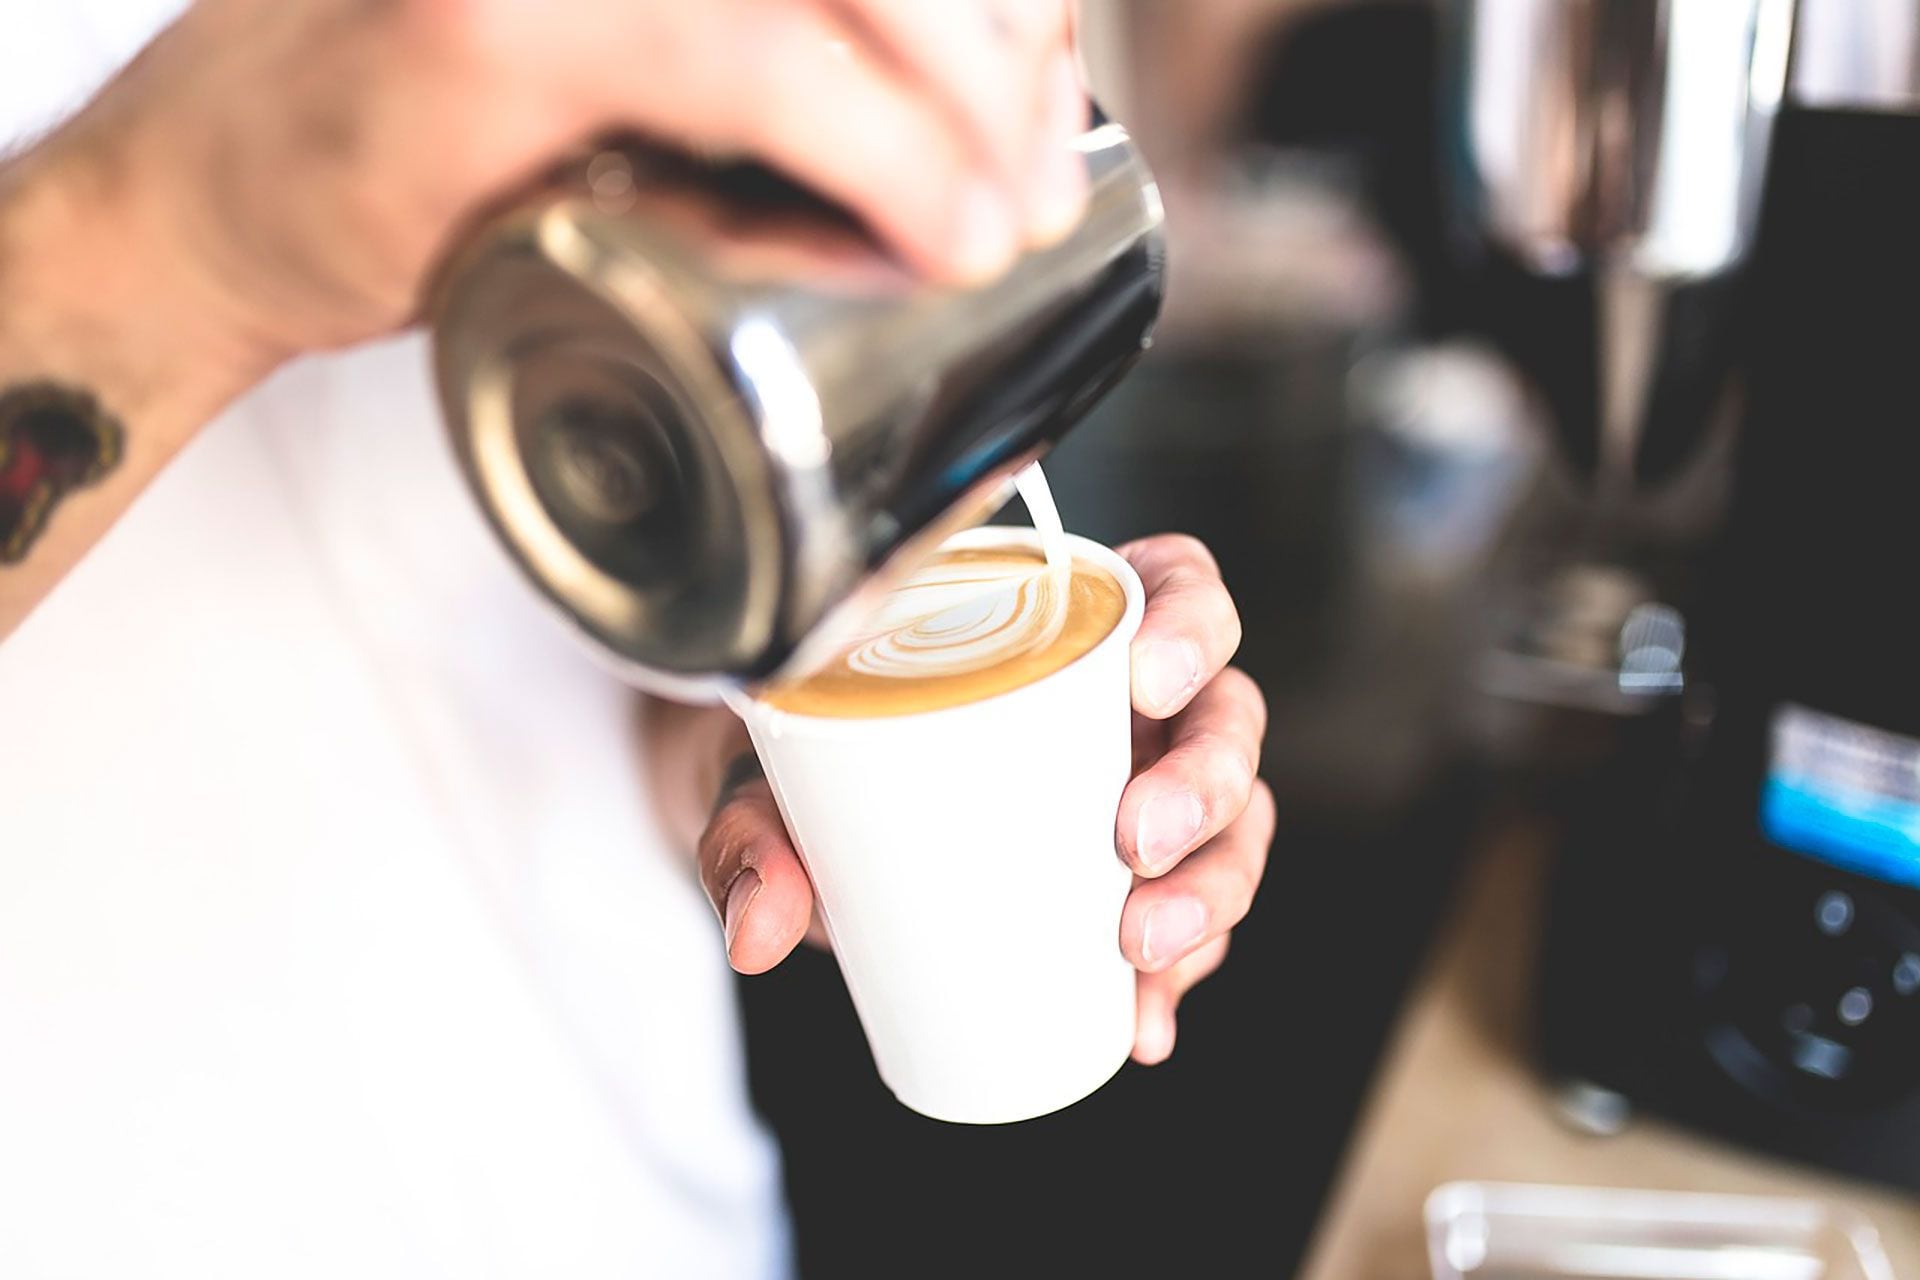 Los baristas destacaron la importancia de las microburbujas y la emulsión en el arte latte, creando una textura cremosa y perfecta (Pixabay)